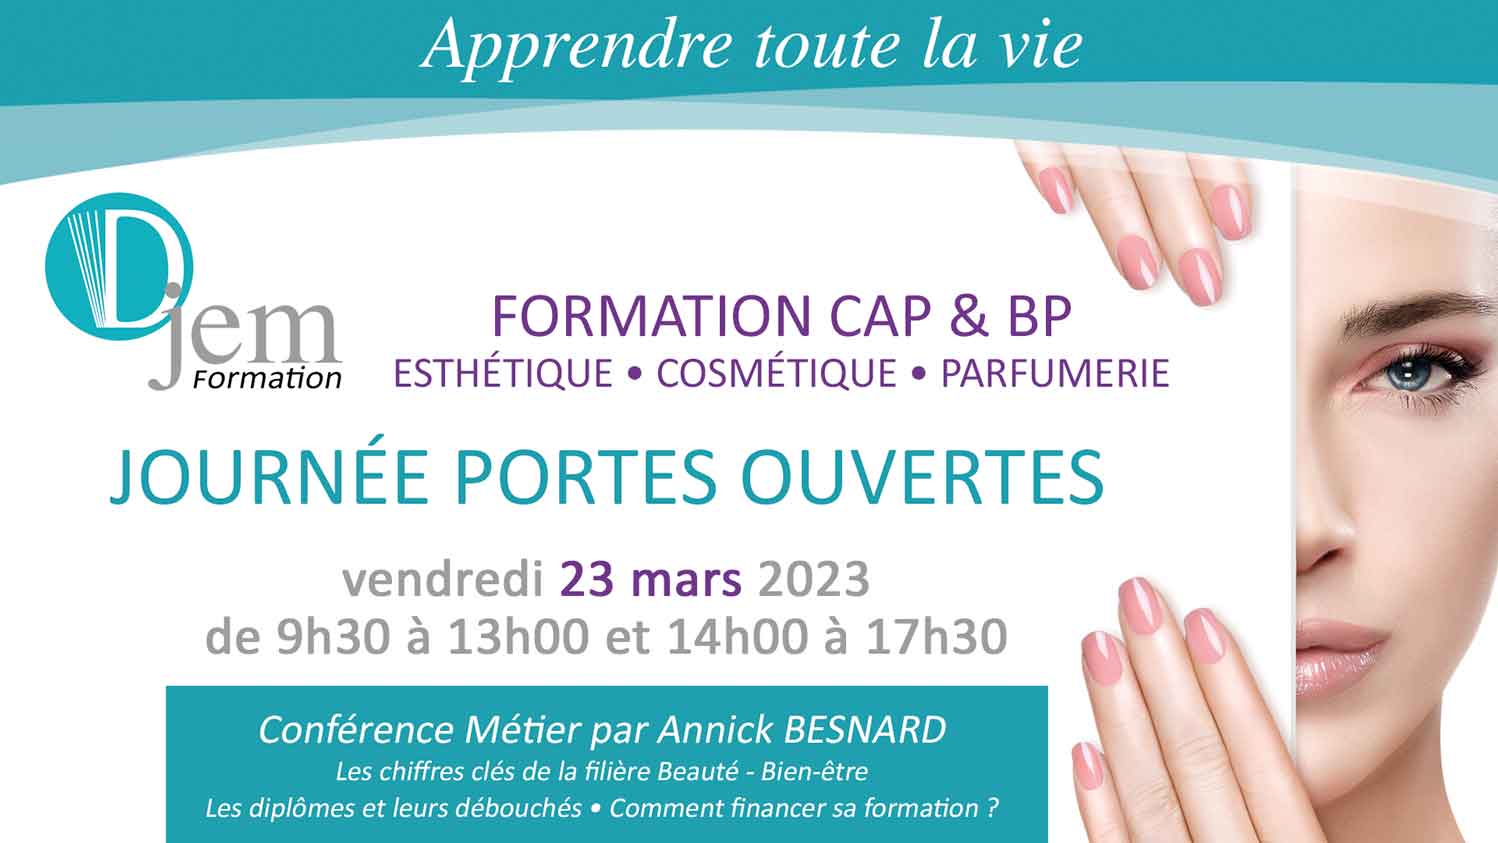 Information inscription esthétique CAP BP Cergy Pontoise Val Oise Portes ouvertes 23 mars 2023 Djem Formation